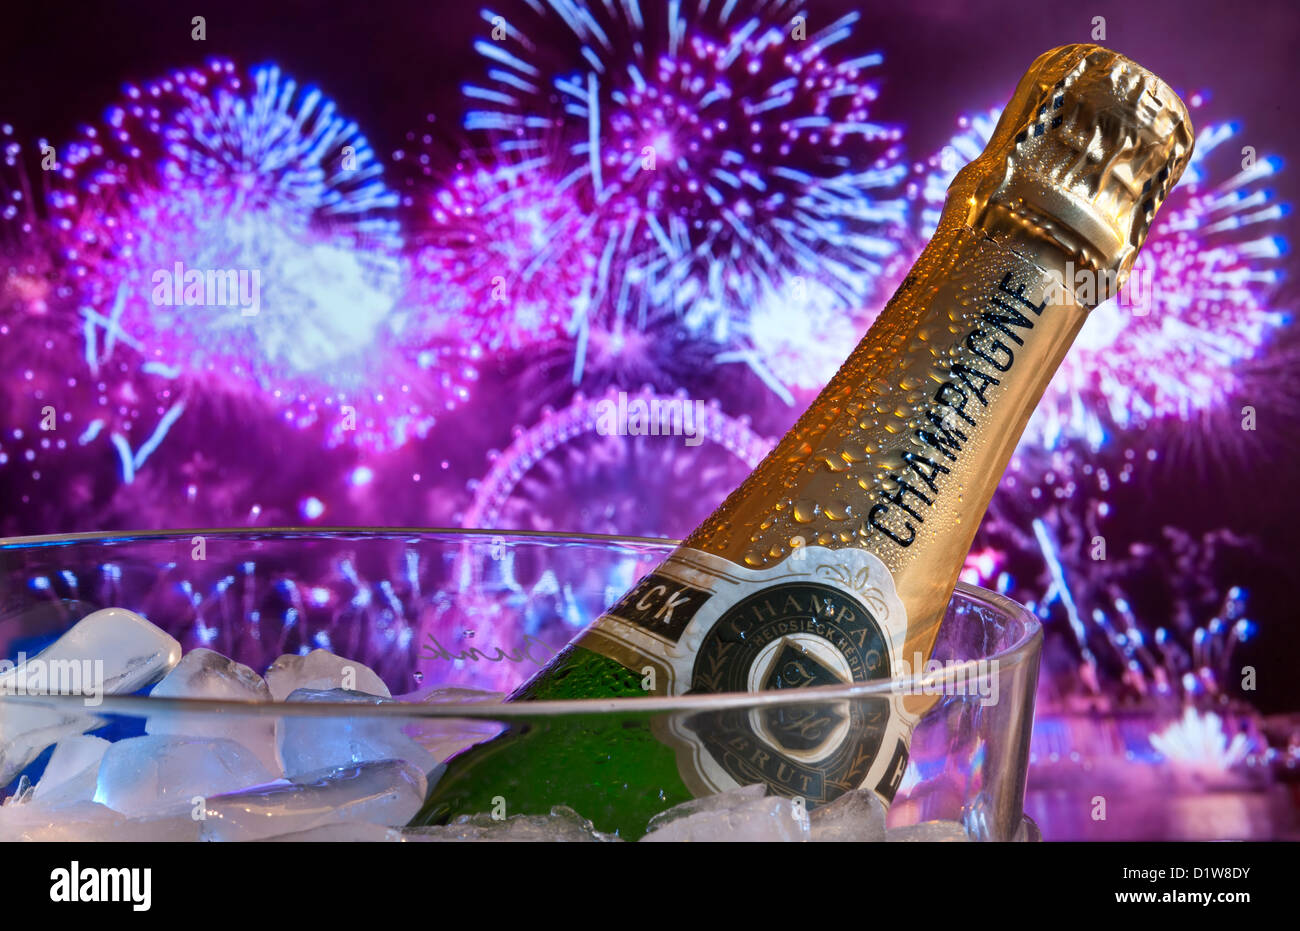 Champagner & Feuerwerk Weinkühler Eiswürfel London Eye Wheel hinter dem Hotel in der Nacht mit großem Party Feuerwerk & Laserlicht Southbank London UK Stockfoto